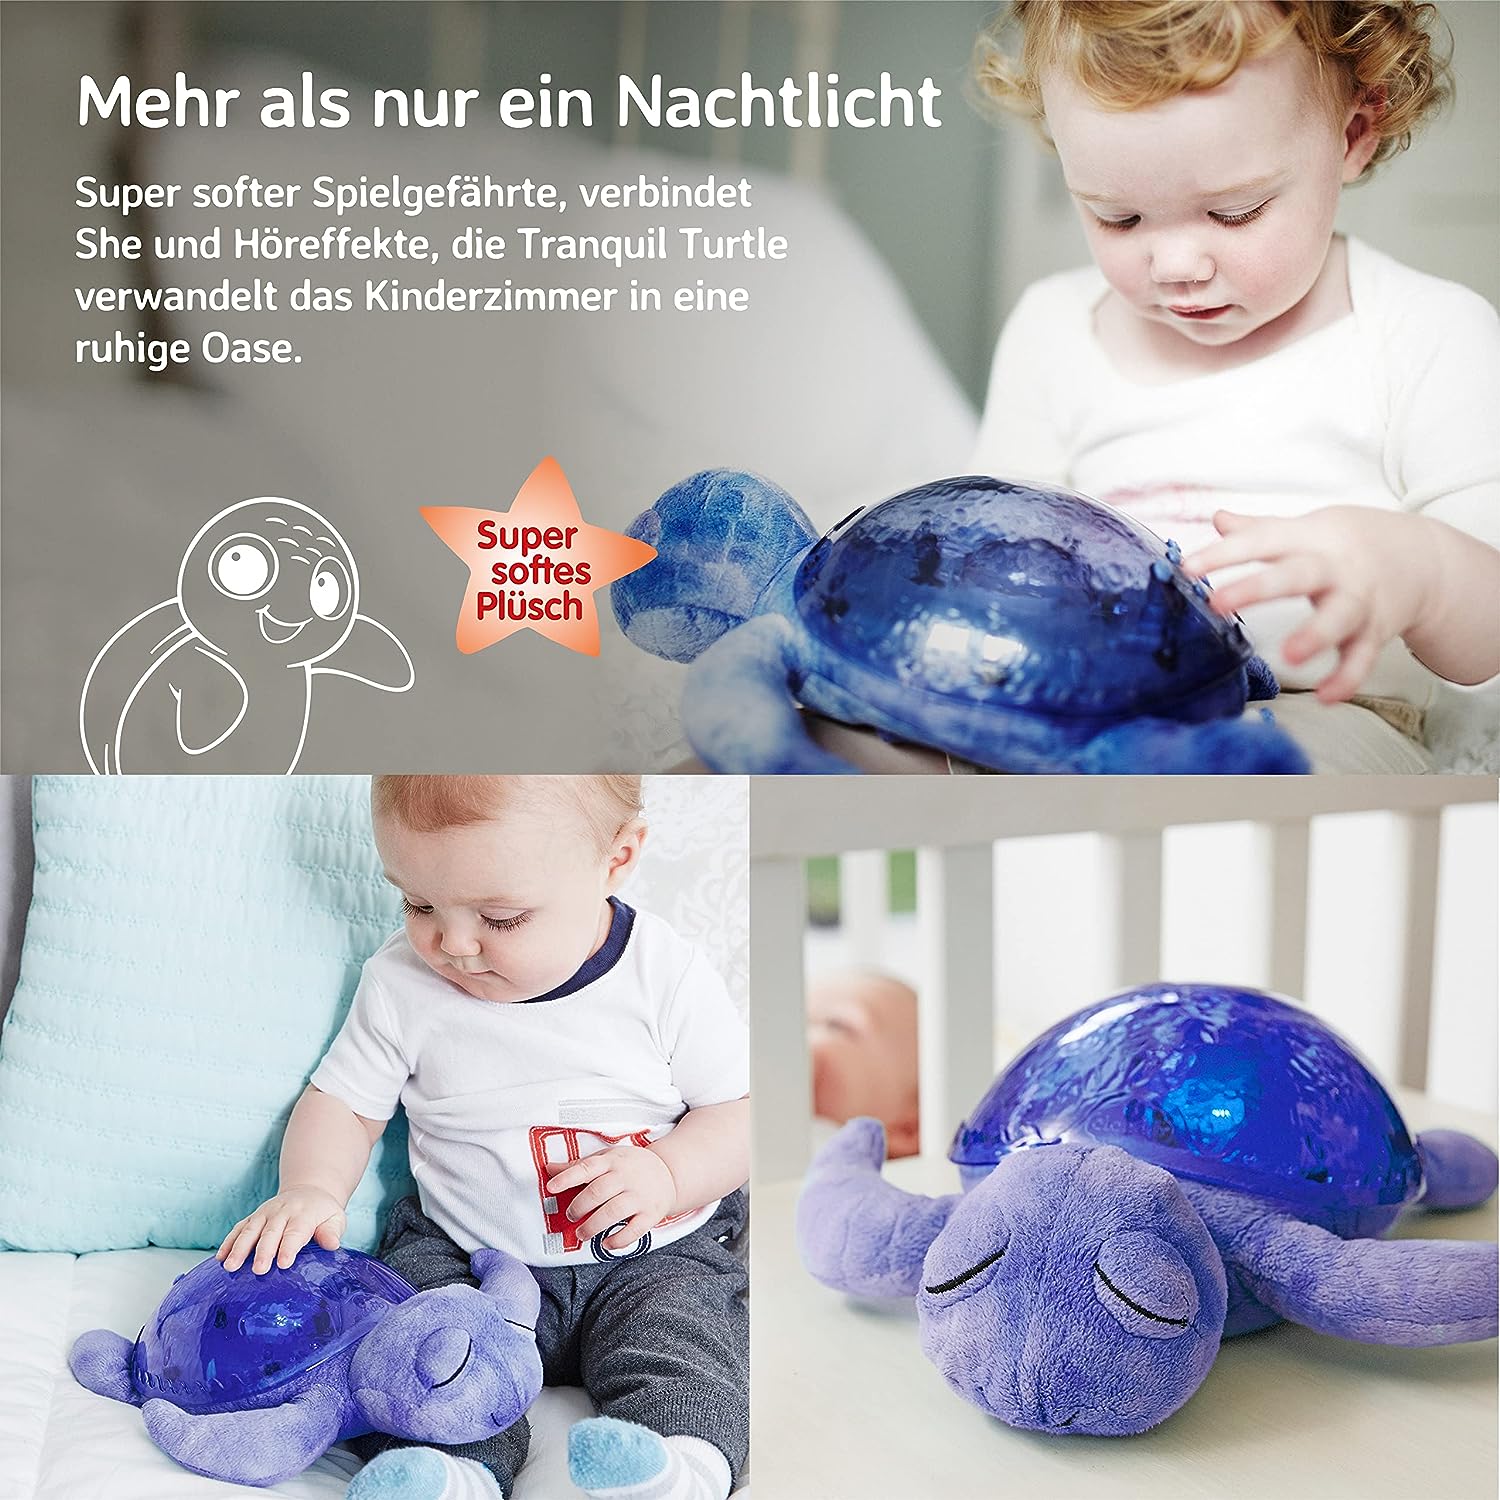 Tranquil-turtle-Ocean-berlindeluxe-blau-schildkroete-box-berlindeluxe